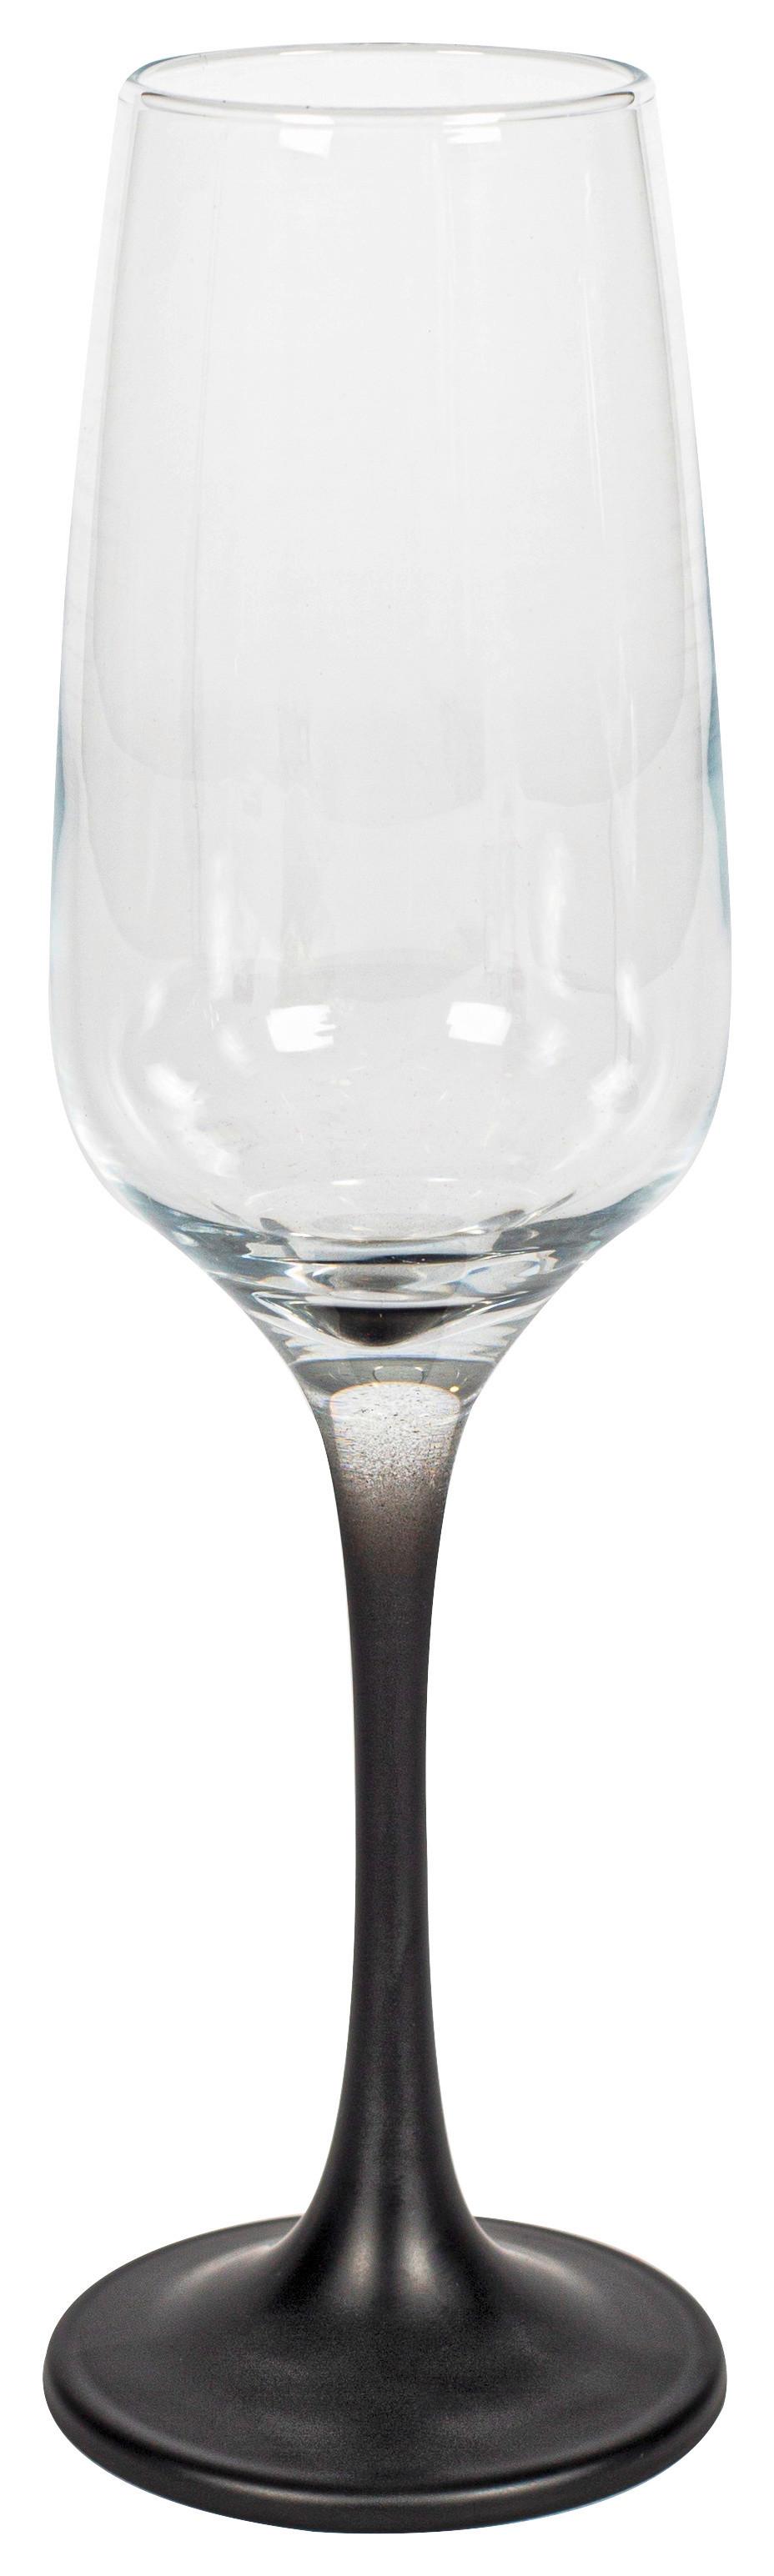 Sektglas Nini in Klar/Schwarz Ø ca. 4,5cm - Klar/Schwarz, MODERN, Glas (4,5/22,6cm) - Premium Living